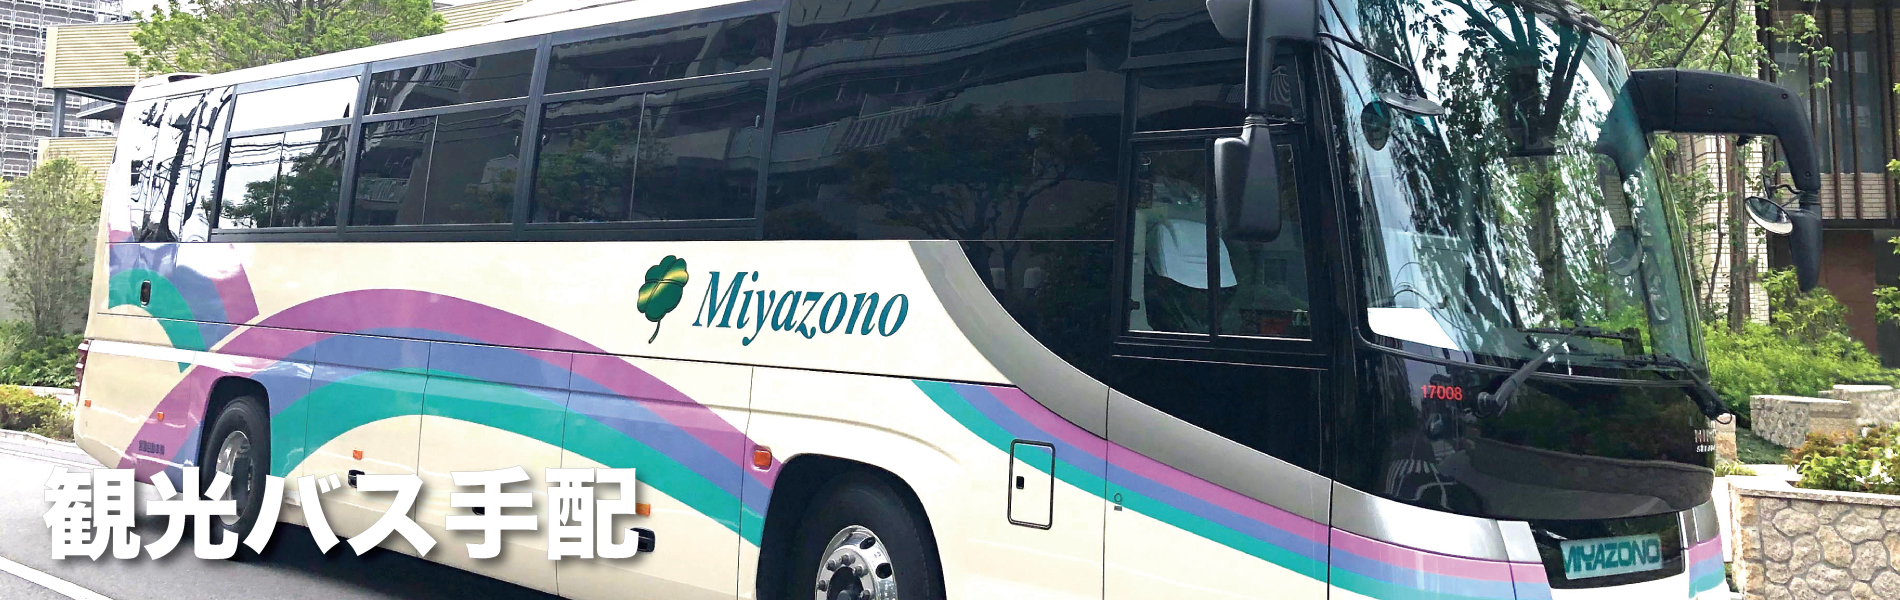 観光バス・ハイヤー手配 バリアフリー旅行の東京ナイストラベルの観光バス手配